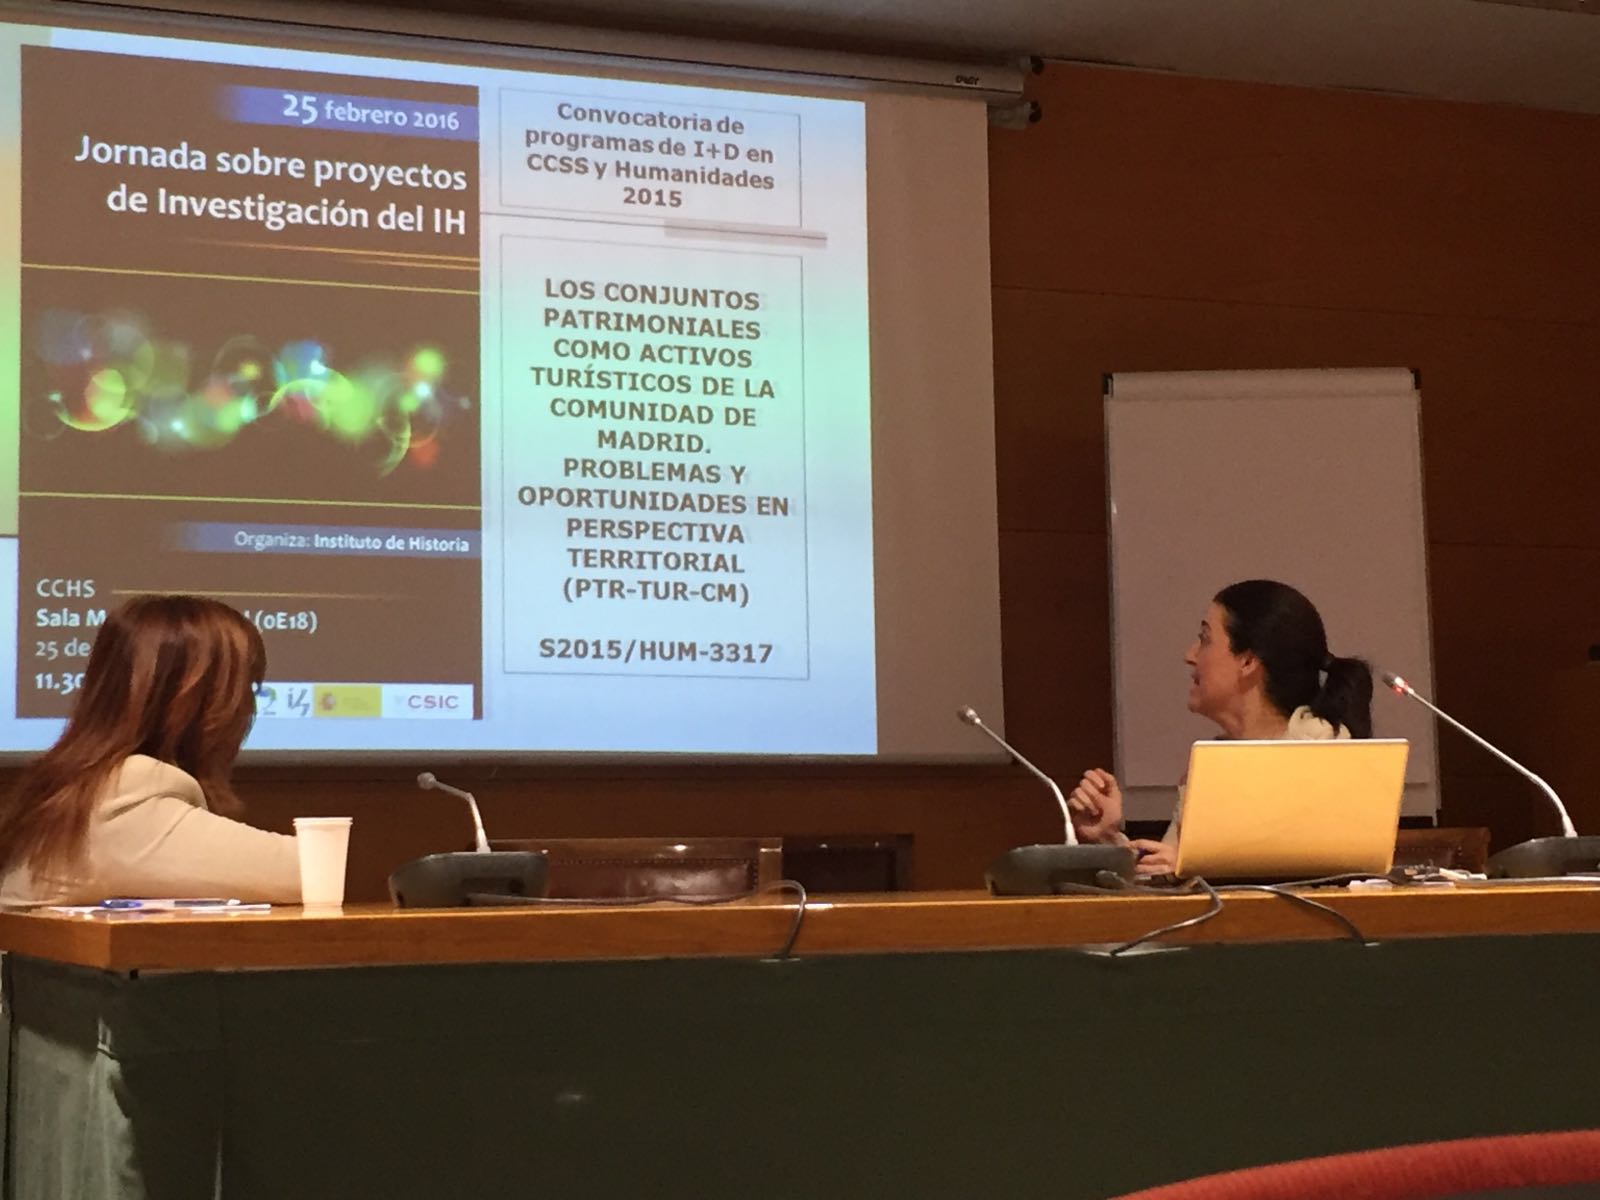 Presentación de María Ruiz del Árbol en la Jornada sobre Proyectos de Investigación del Instituto de Historia del CSIC (25 febrero 2016)